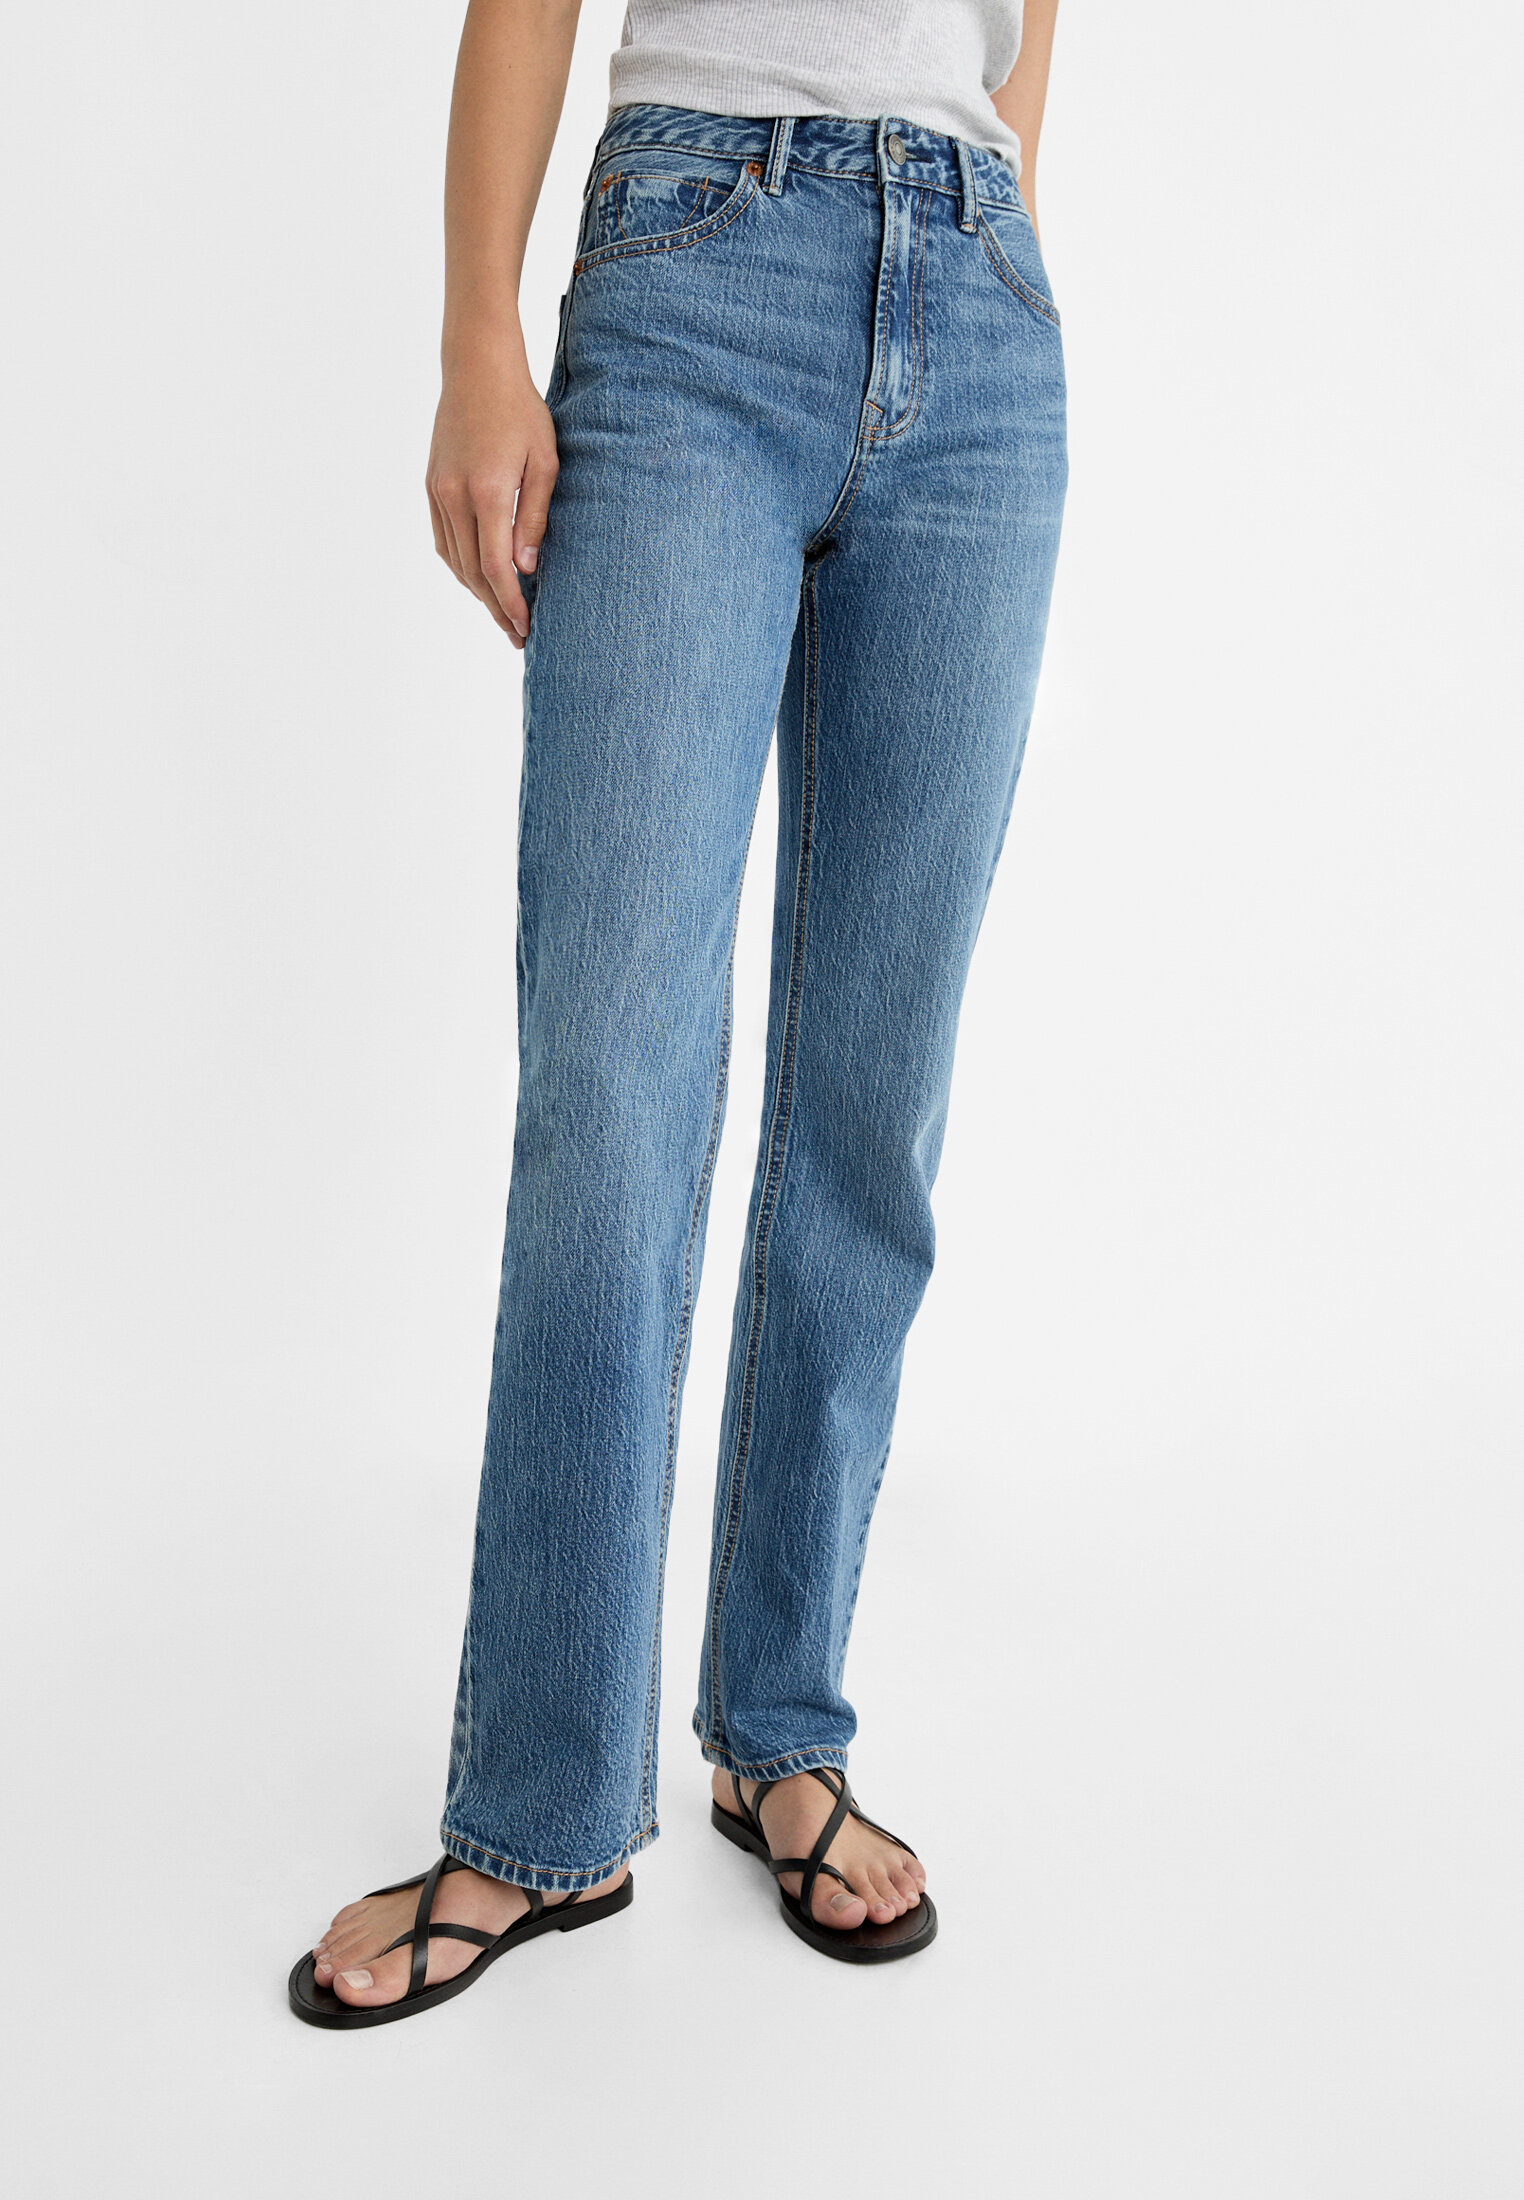 D98 straight-leg vintage effect jeans